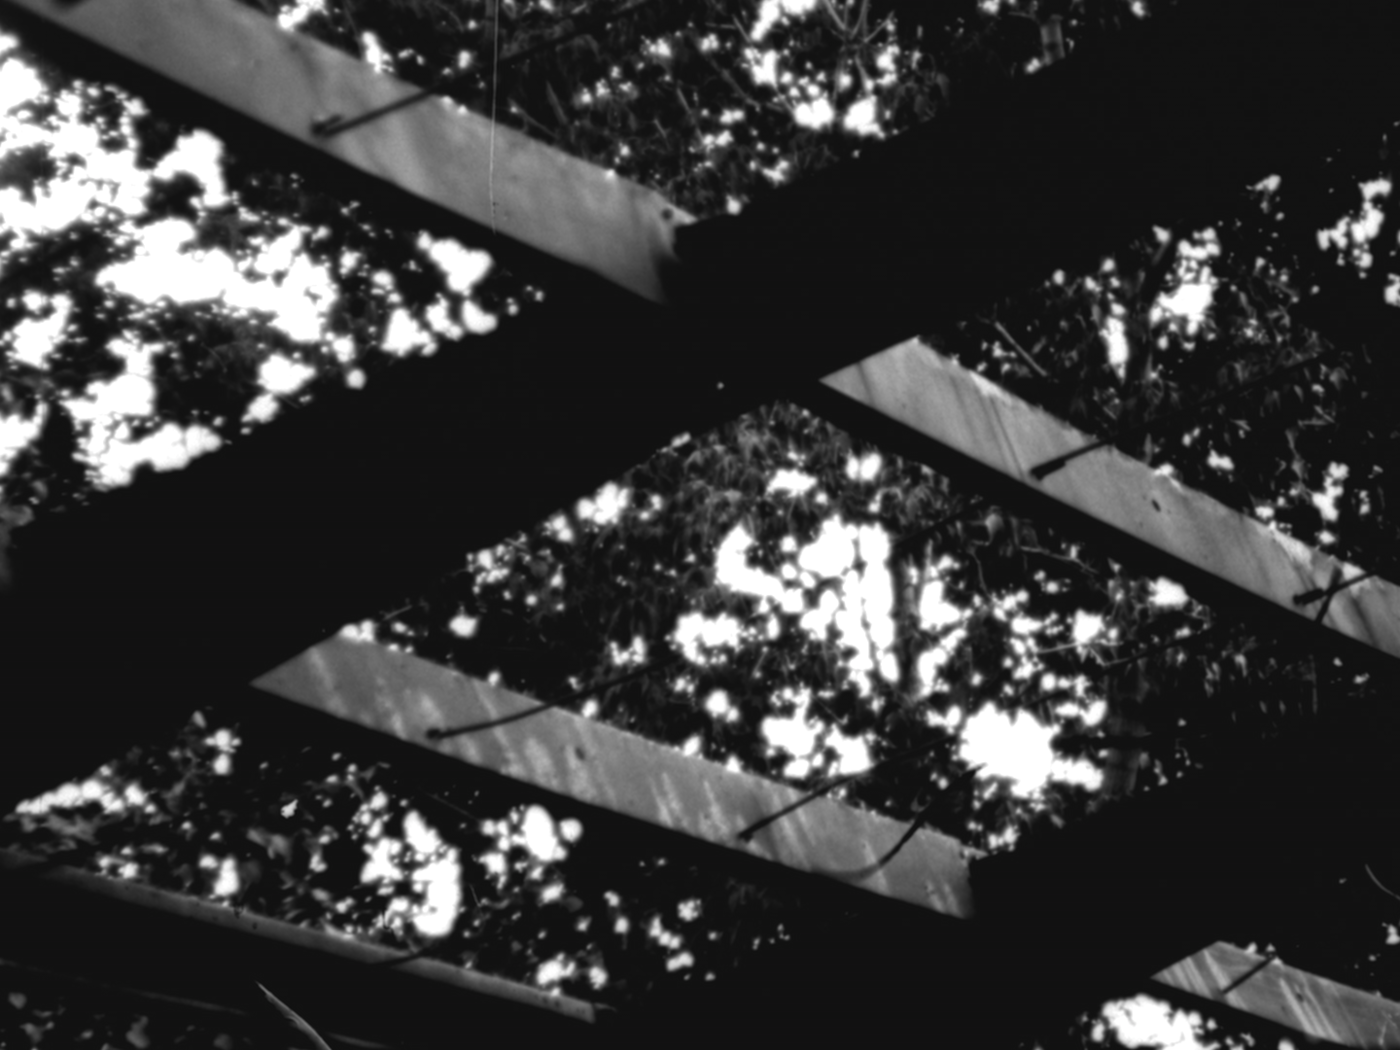 Gros plan sur une structure métallique horizontale au-dessus de laquelle on voit les feuilles d'un arbre.